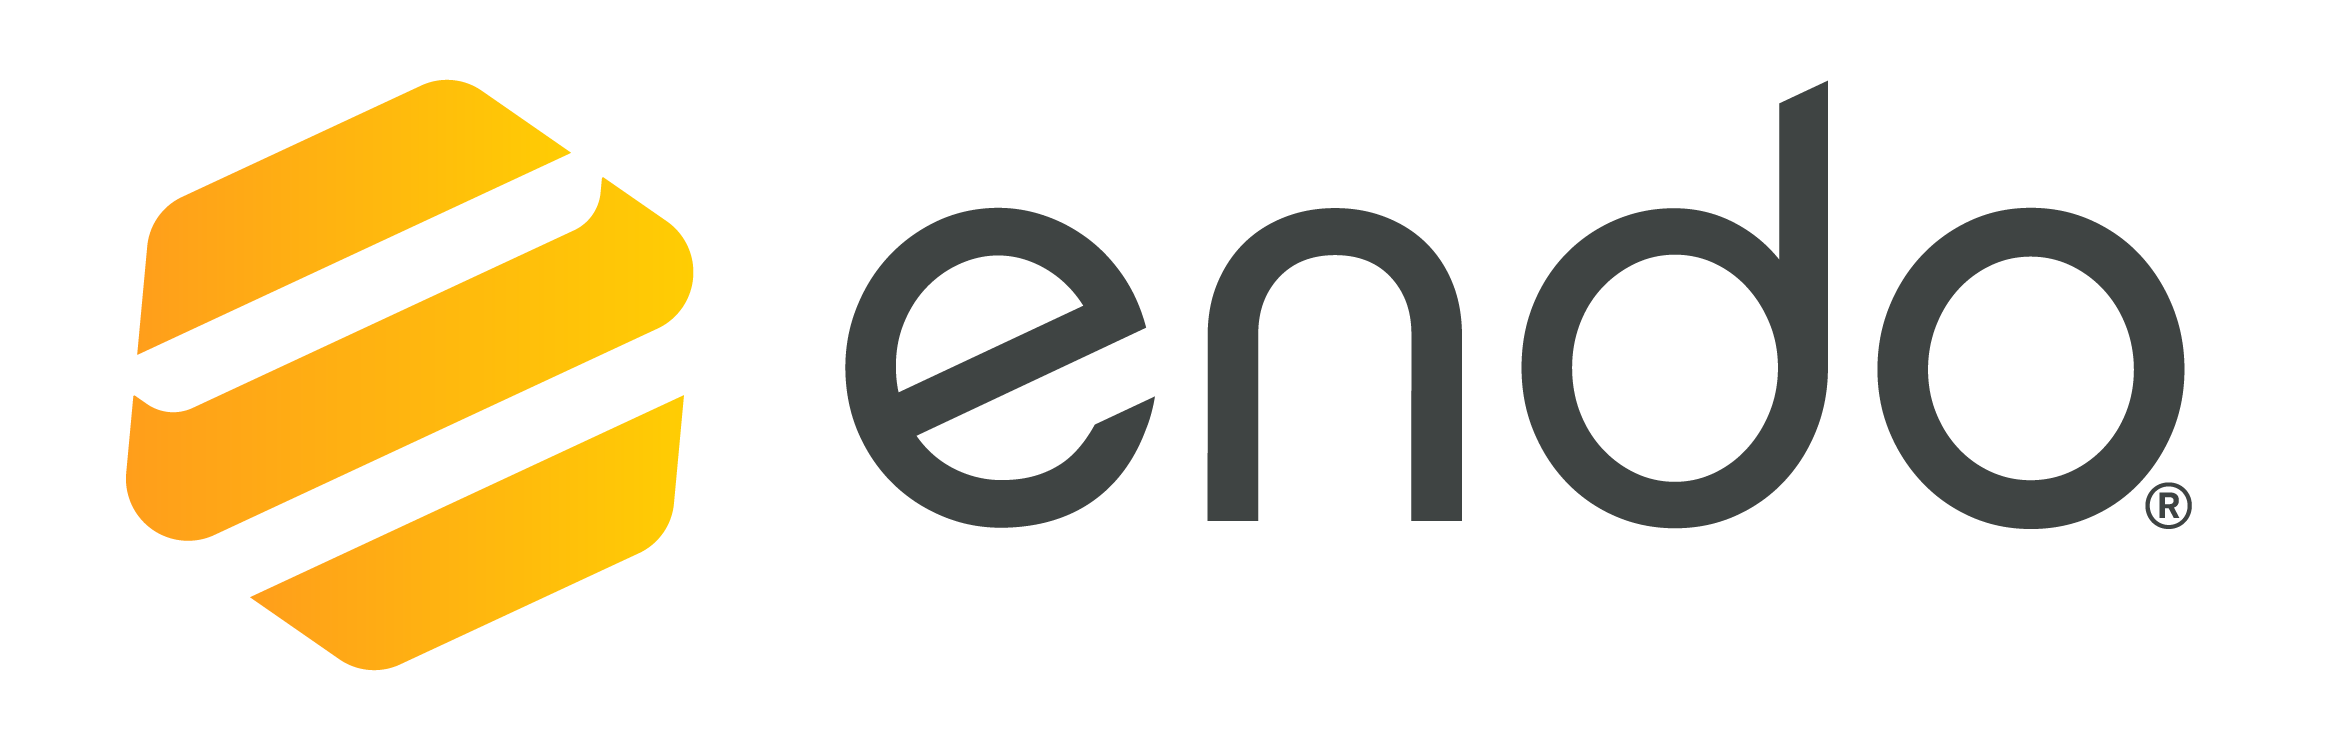 Endo Logo